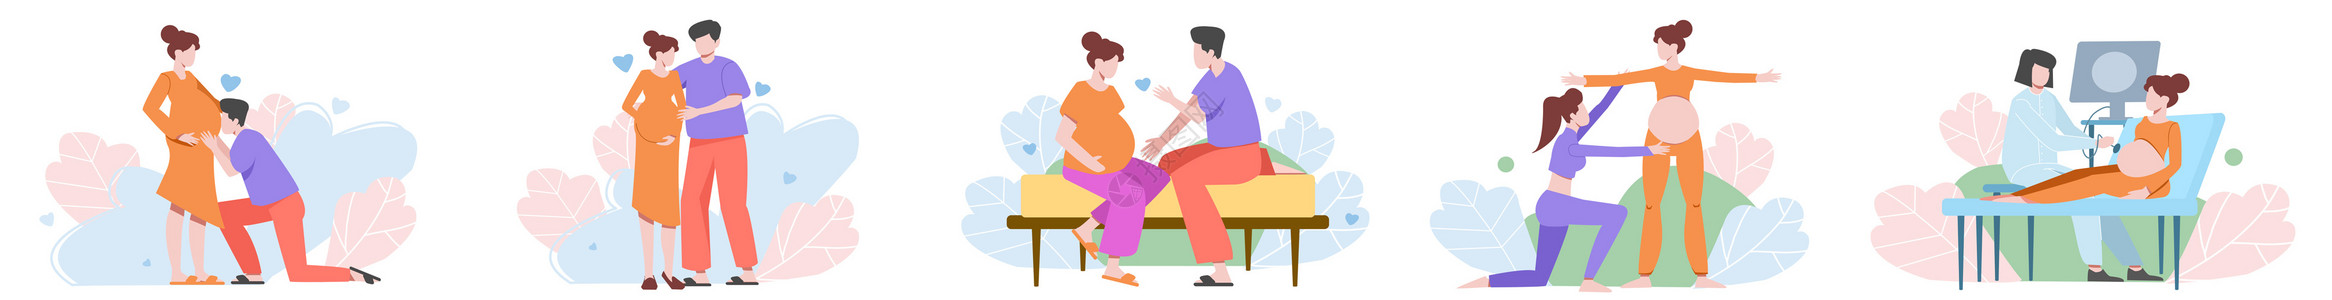 衣物护理产前护理孕妇伴侣呵护训练场景插画元素插画